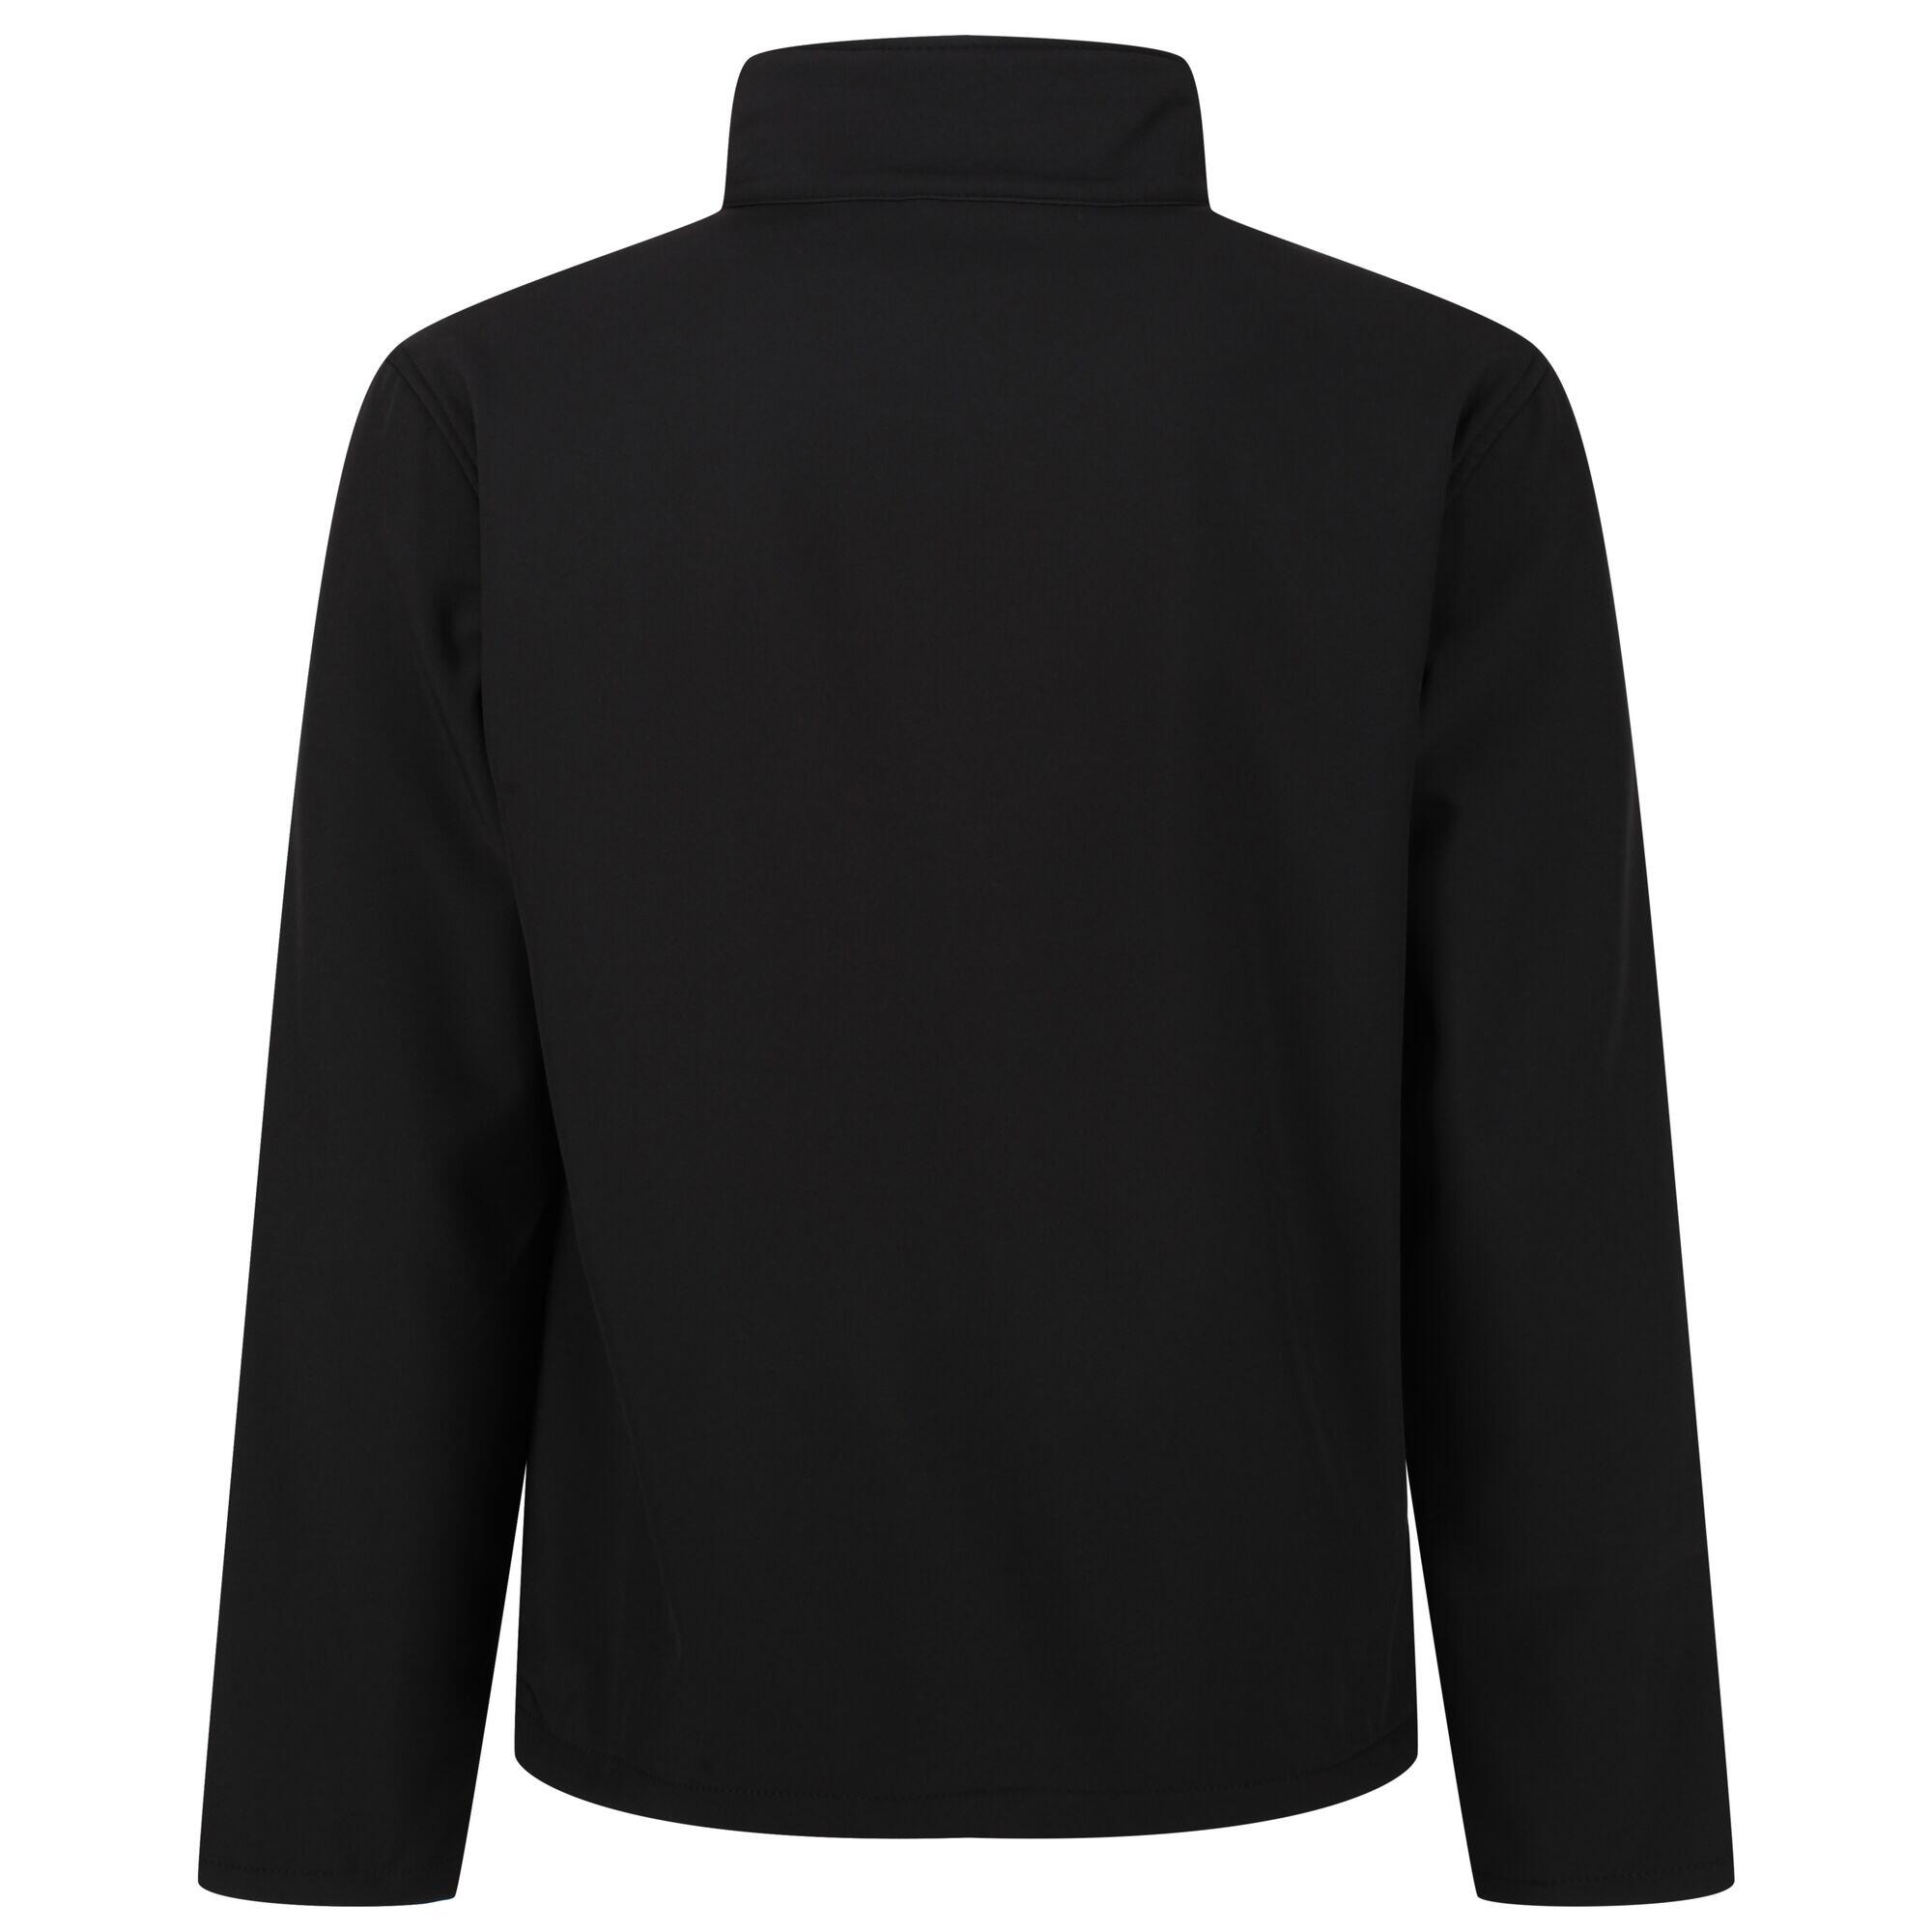 Reid Mens Softshell Wind Resistant Water Repellent Jacket (Black) 2/4